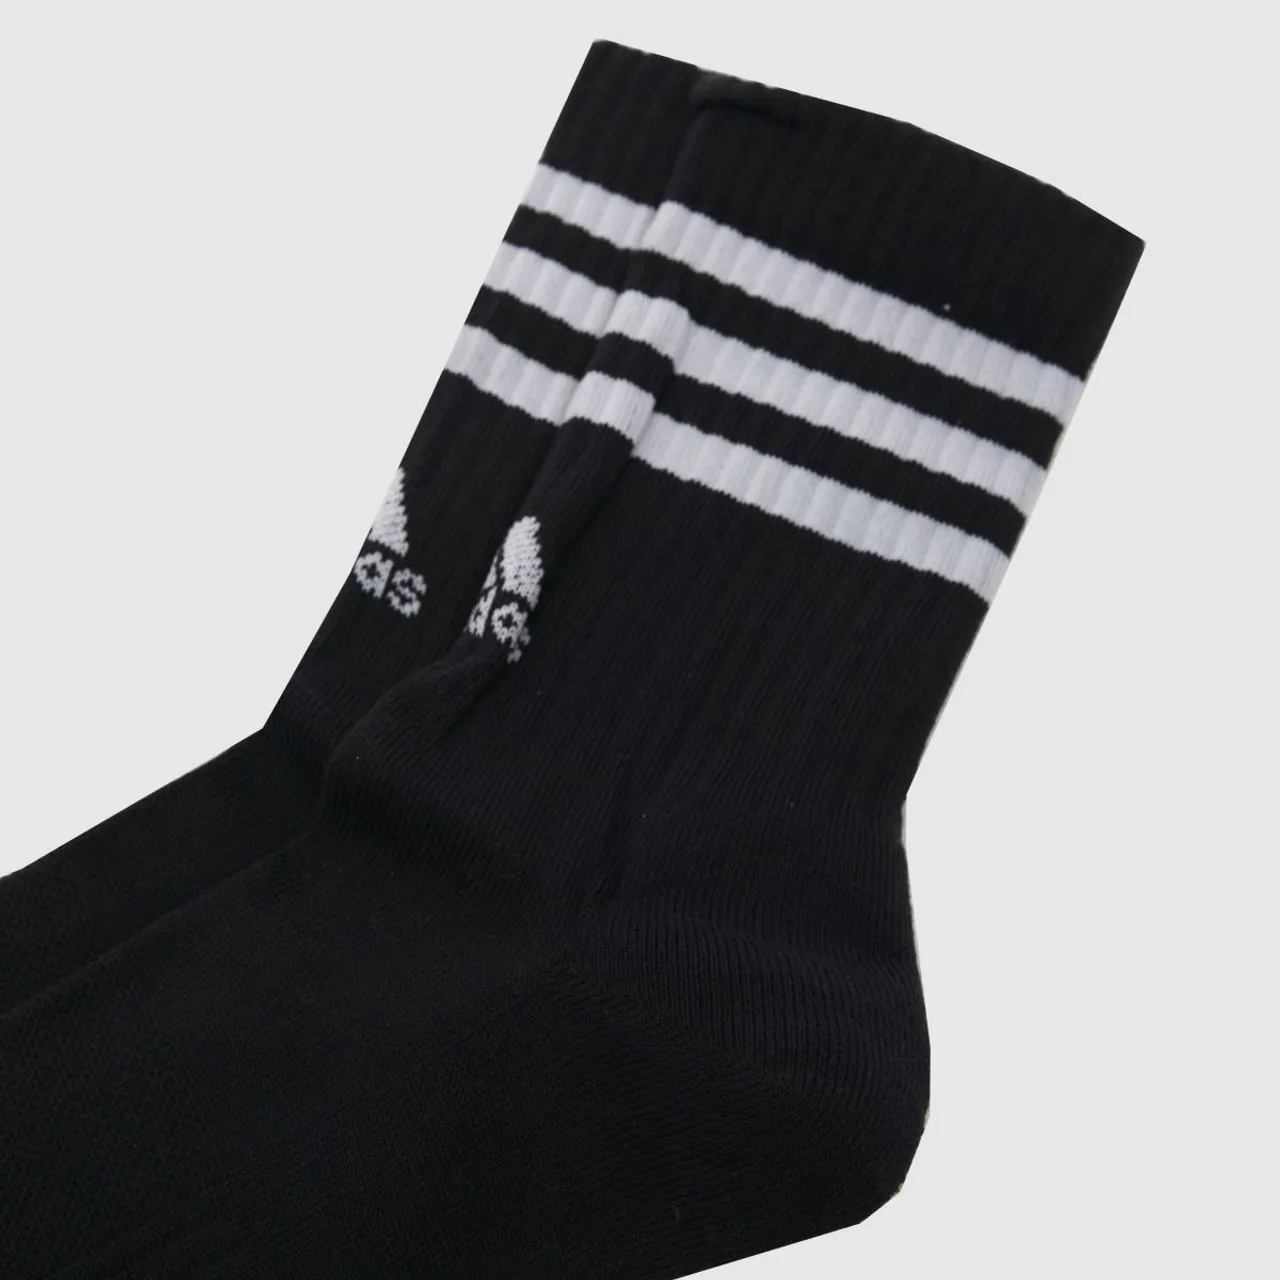 Adidas Multi Stripe Crew Socks 3 Pack